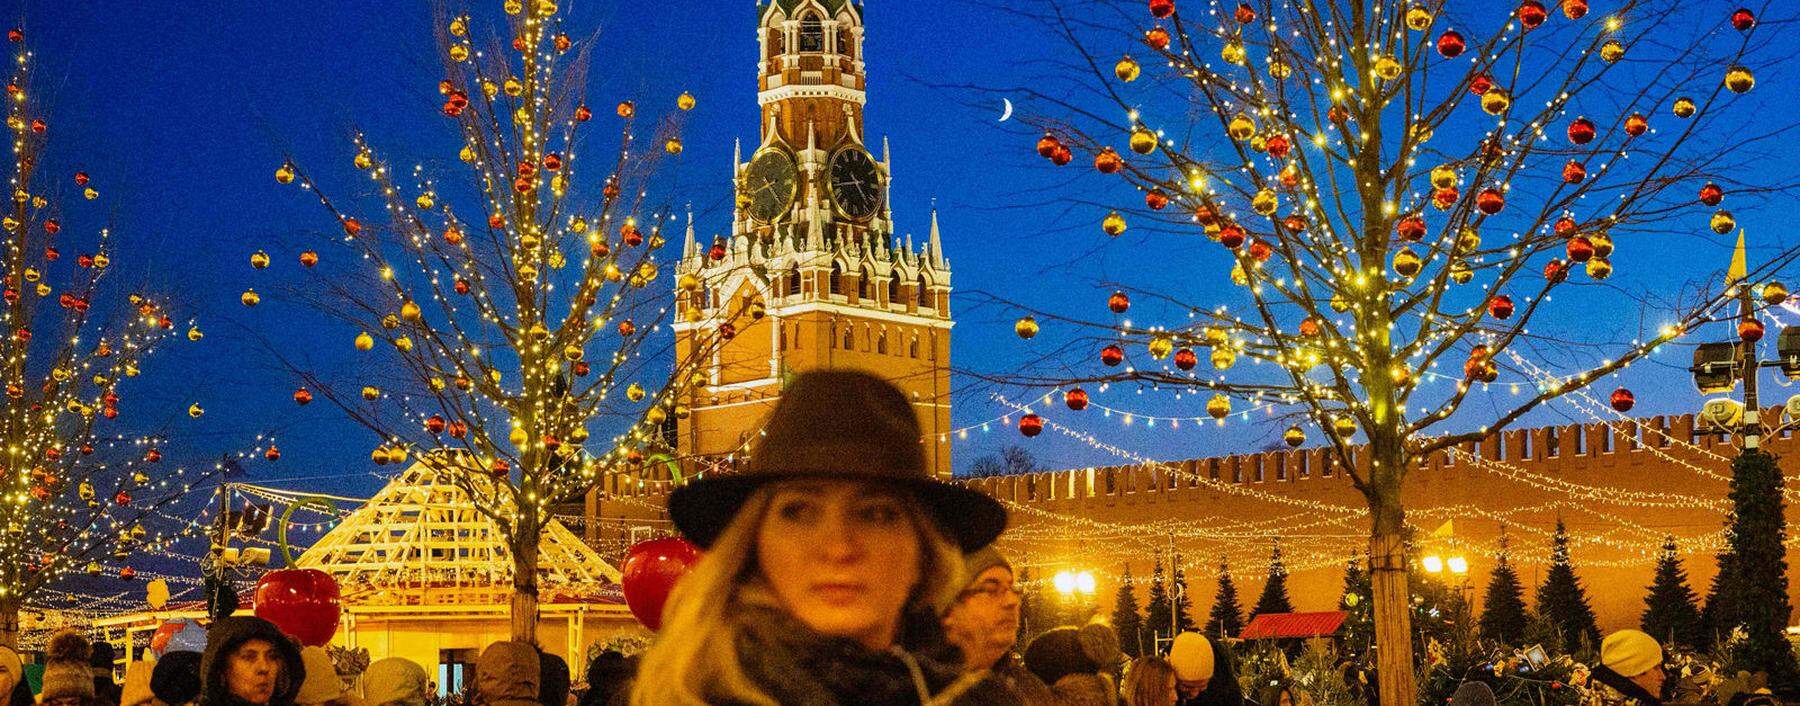 Weihnachtsstimmung auf dem Roten Platz vor dem Kreml. Die russische Börse war schon das ganze Jahr über in bester Feierlaune.